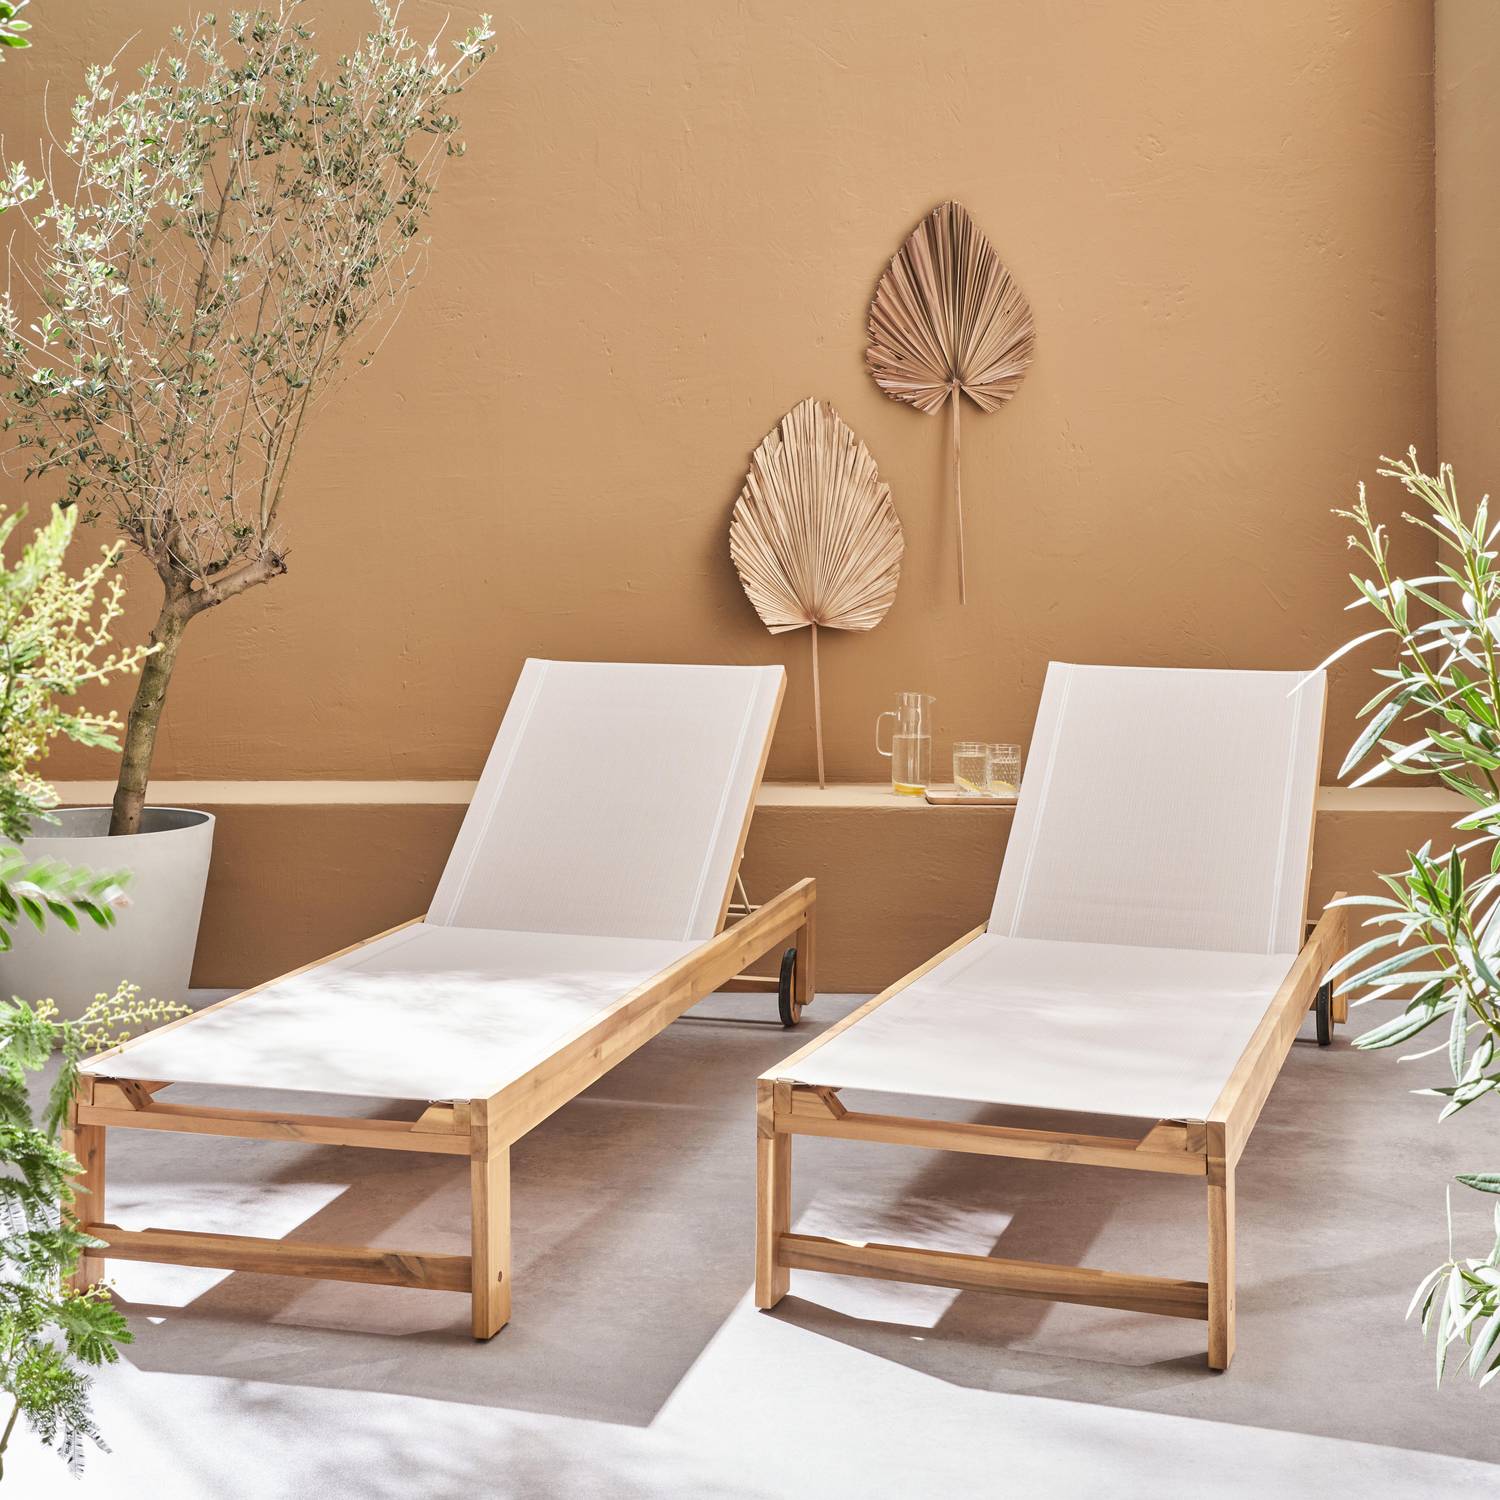 Lot de 2 bains de soleil en bois d'acacia et textilène beige, multi positions avec roulettes Photo1